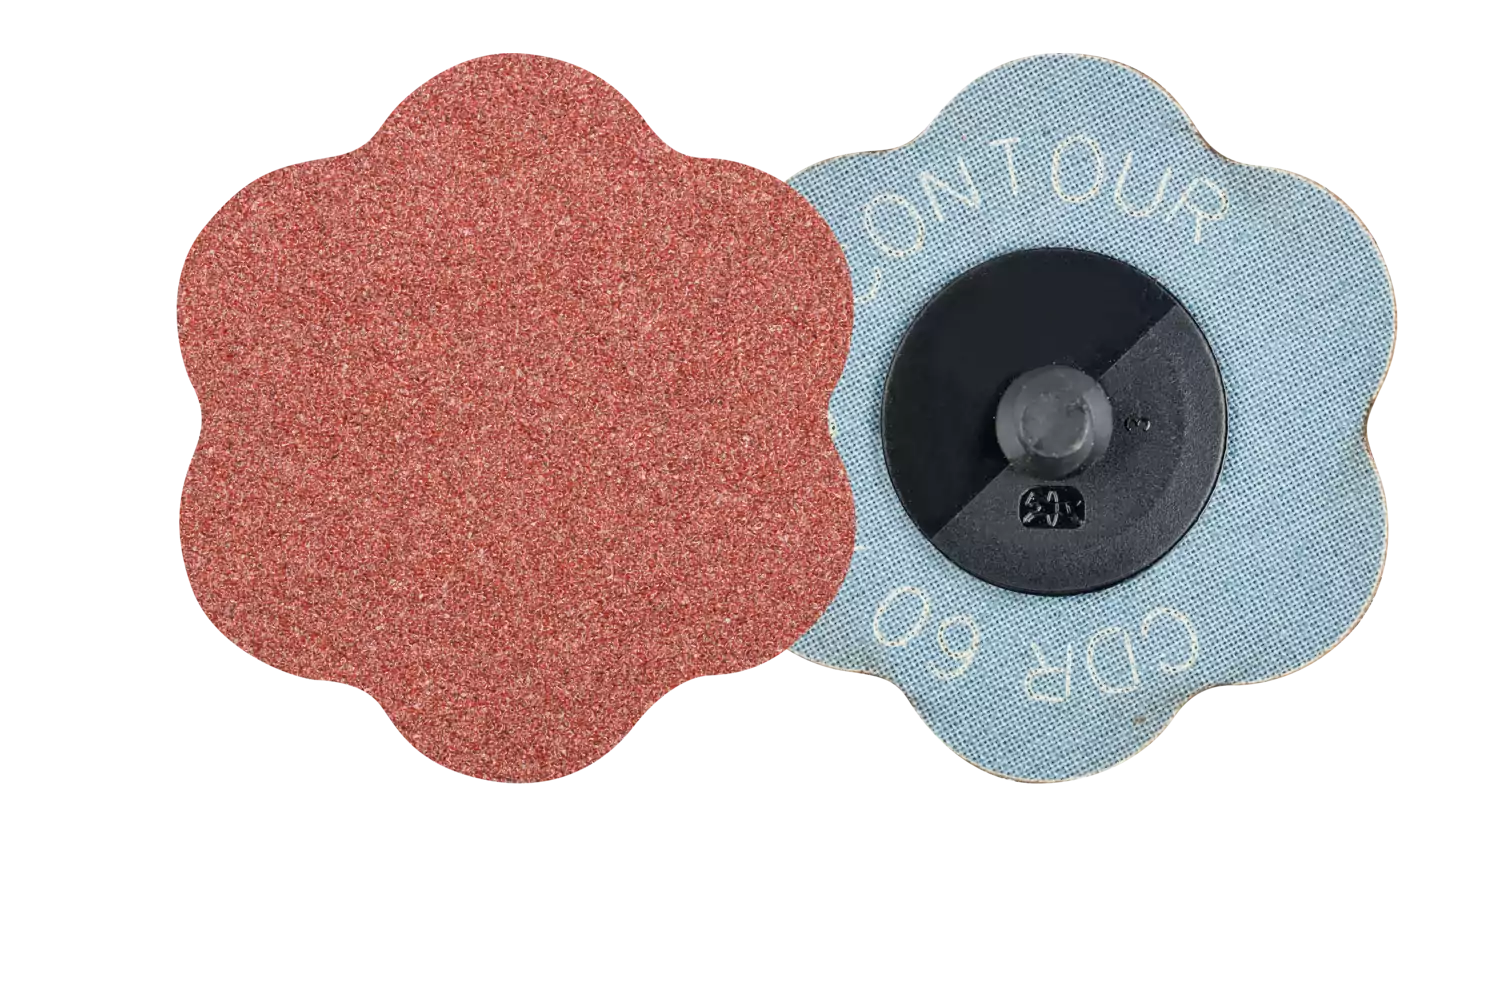 COMBIDISC aluminium oxide abrasive disc CDR dia. 60mm A60 CONTOUR for contours 1